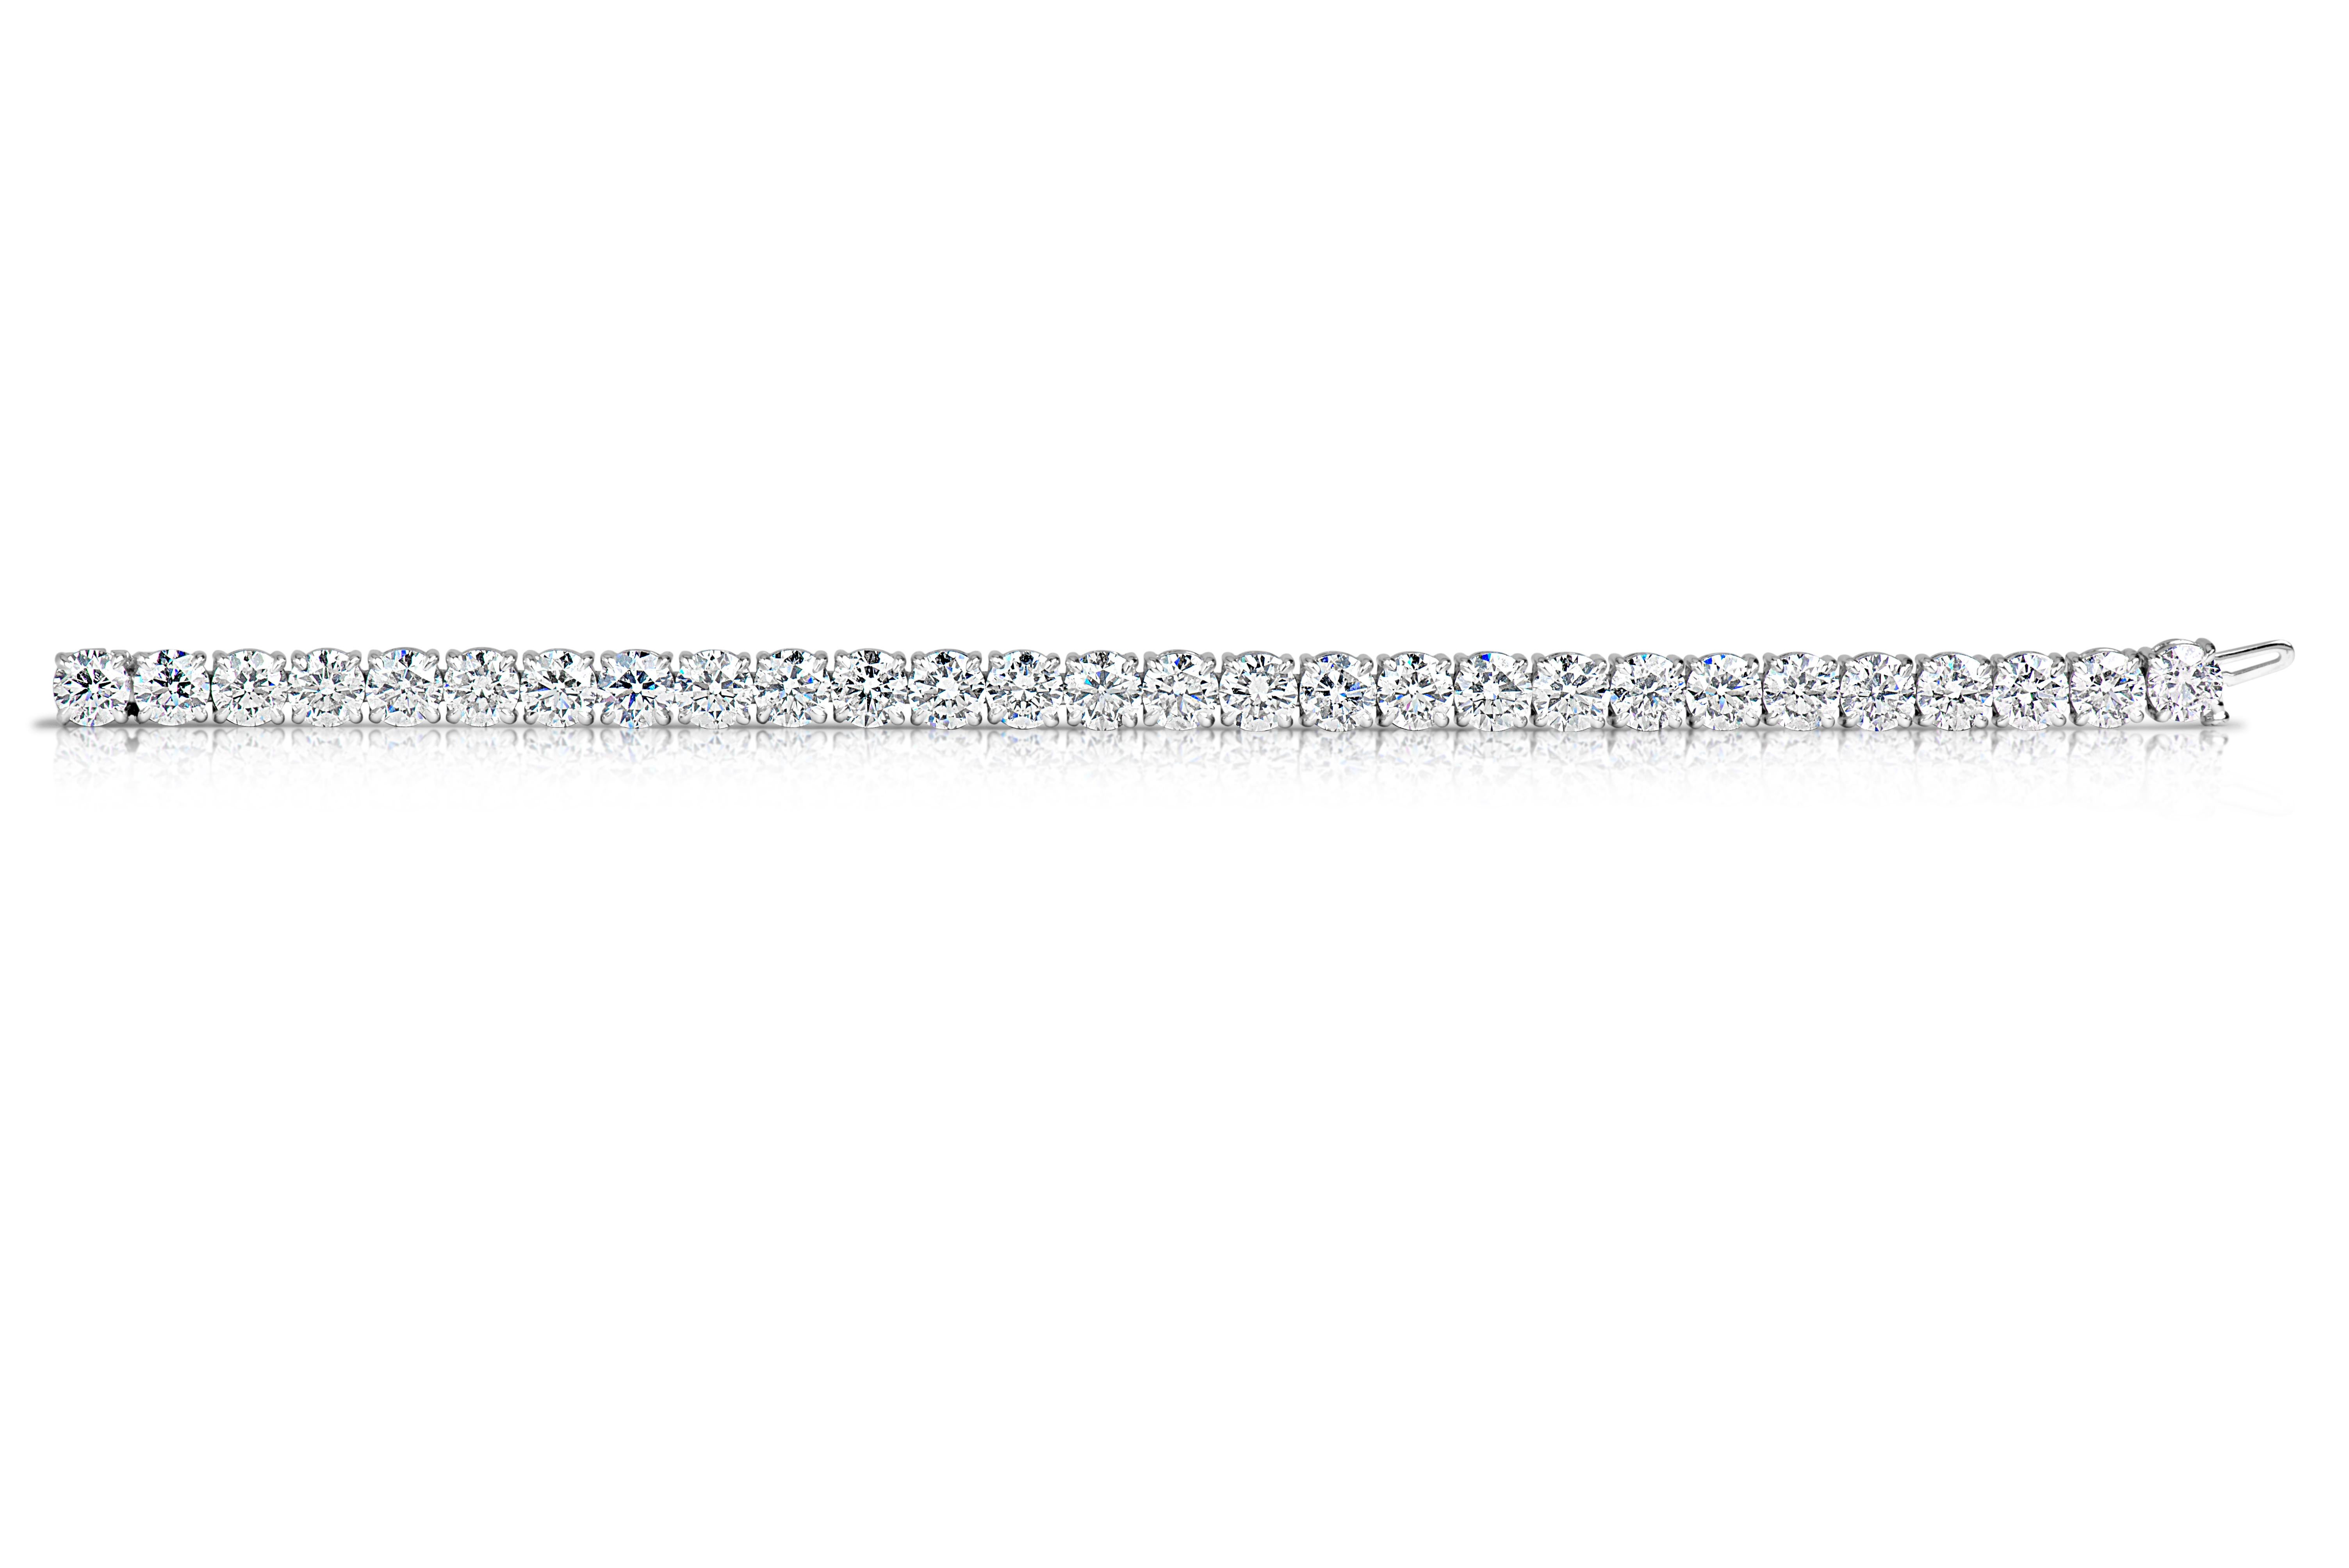 Bracelet de tennis en diamants comprenant 41 brillants ronds pesant 10 carats, en or blanc 14 carats.
Couleur : G-H
Clarté : SI

